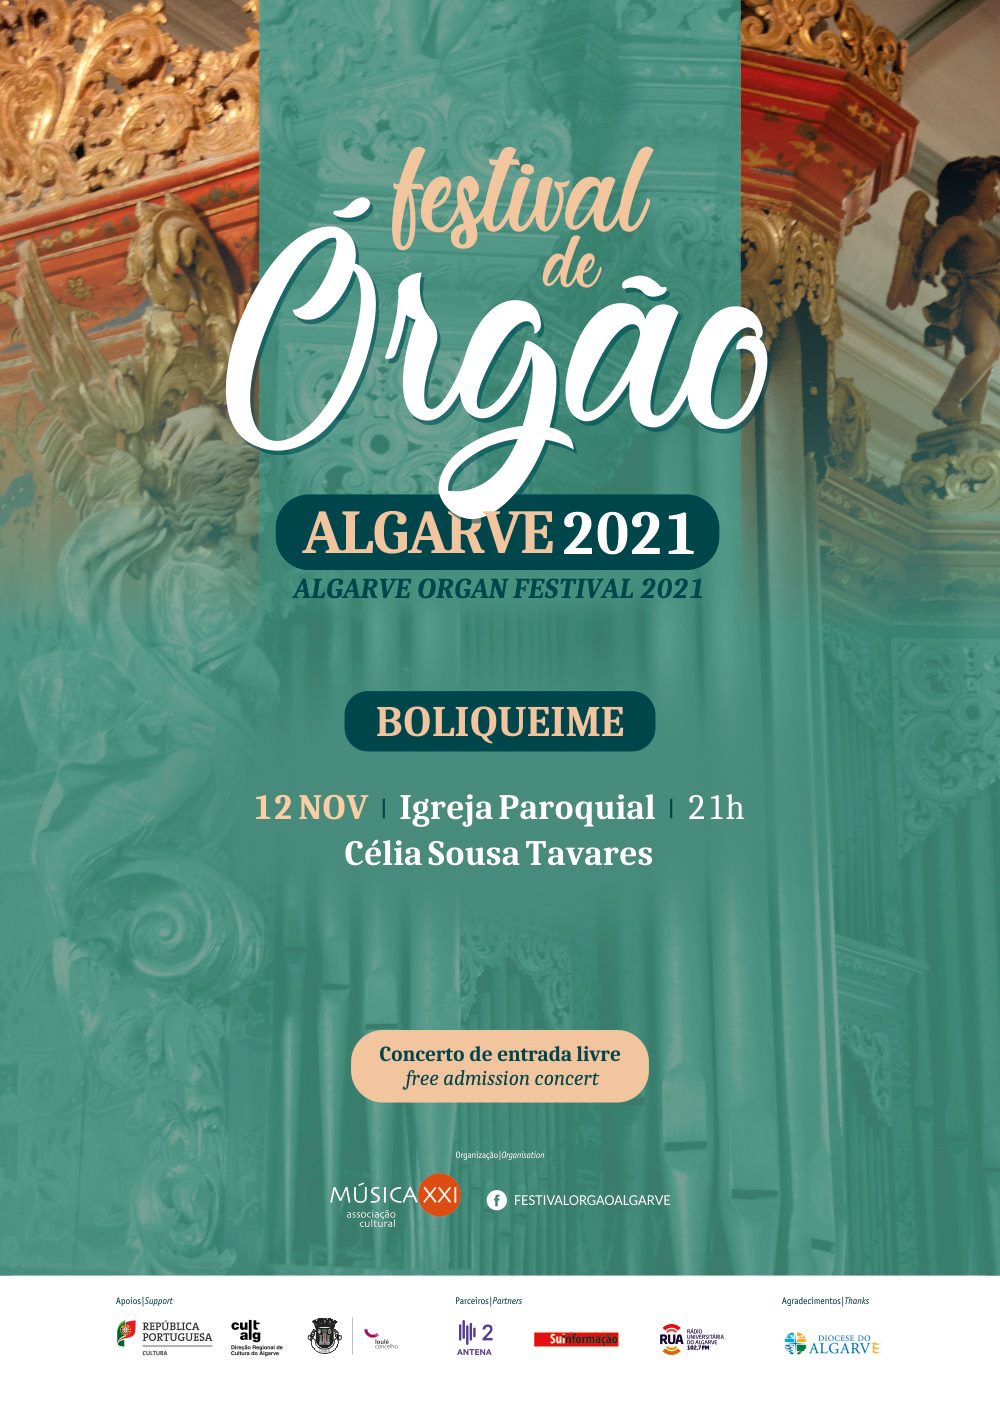 Fetival de Órgão Algarve 2021 - Boliqueime